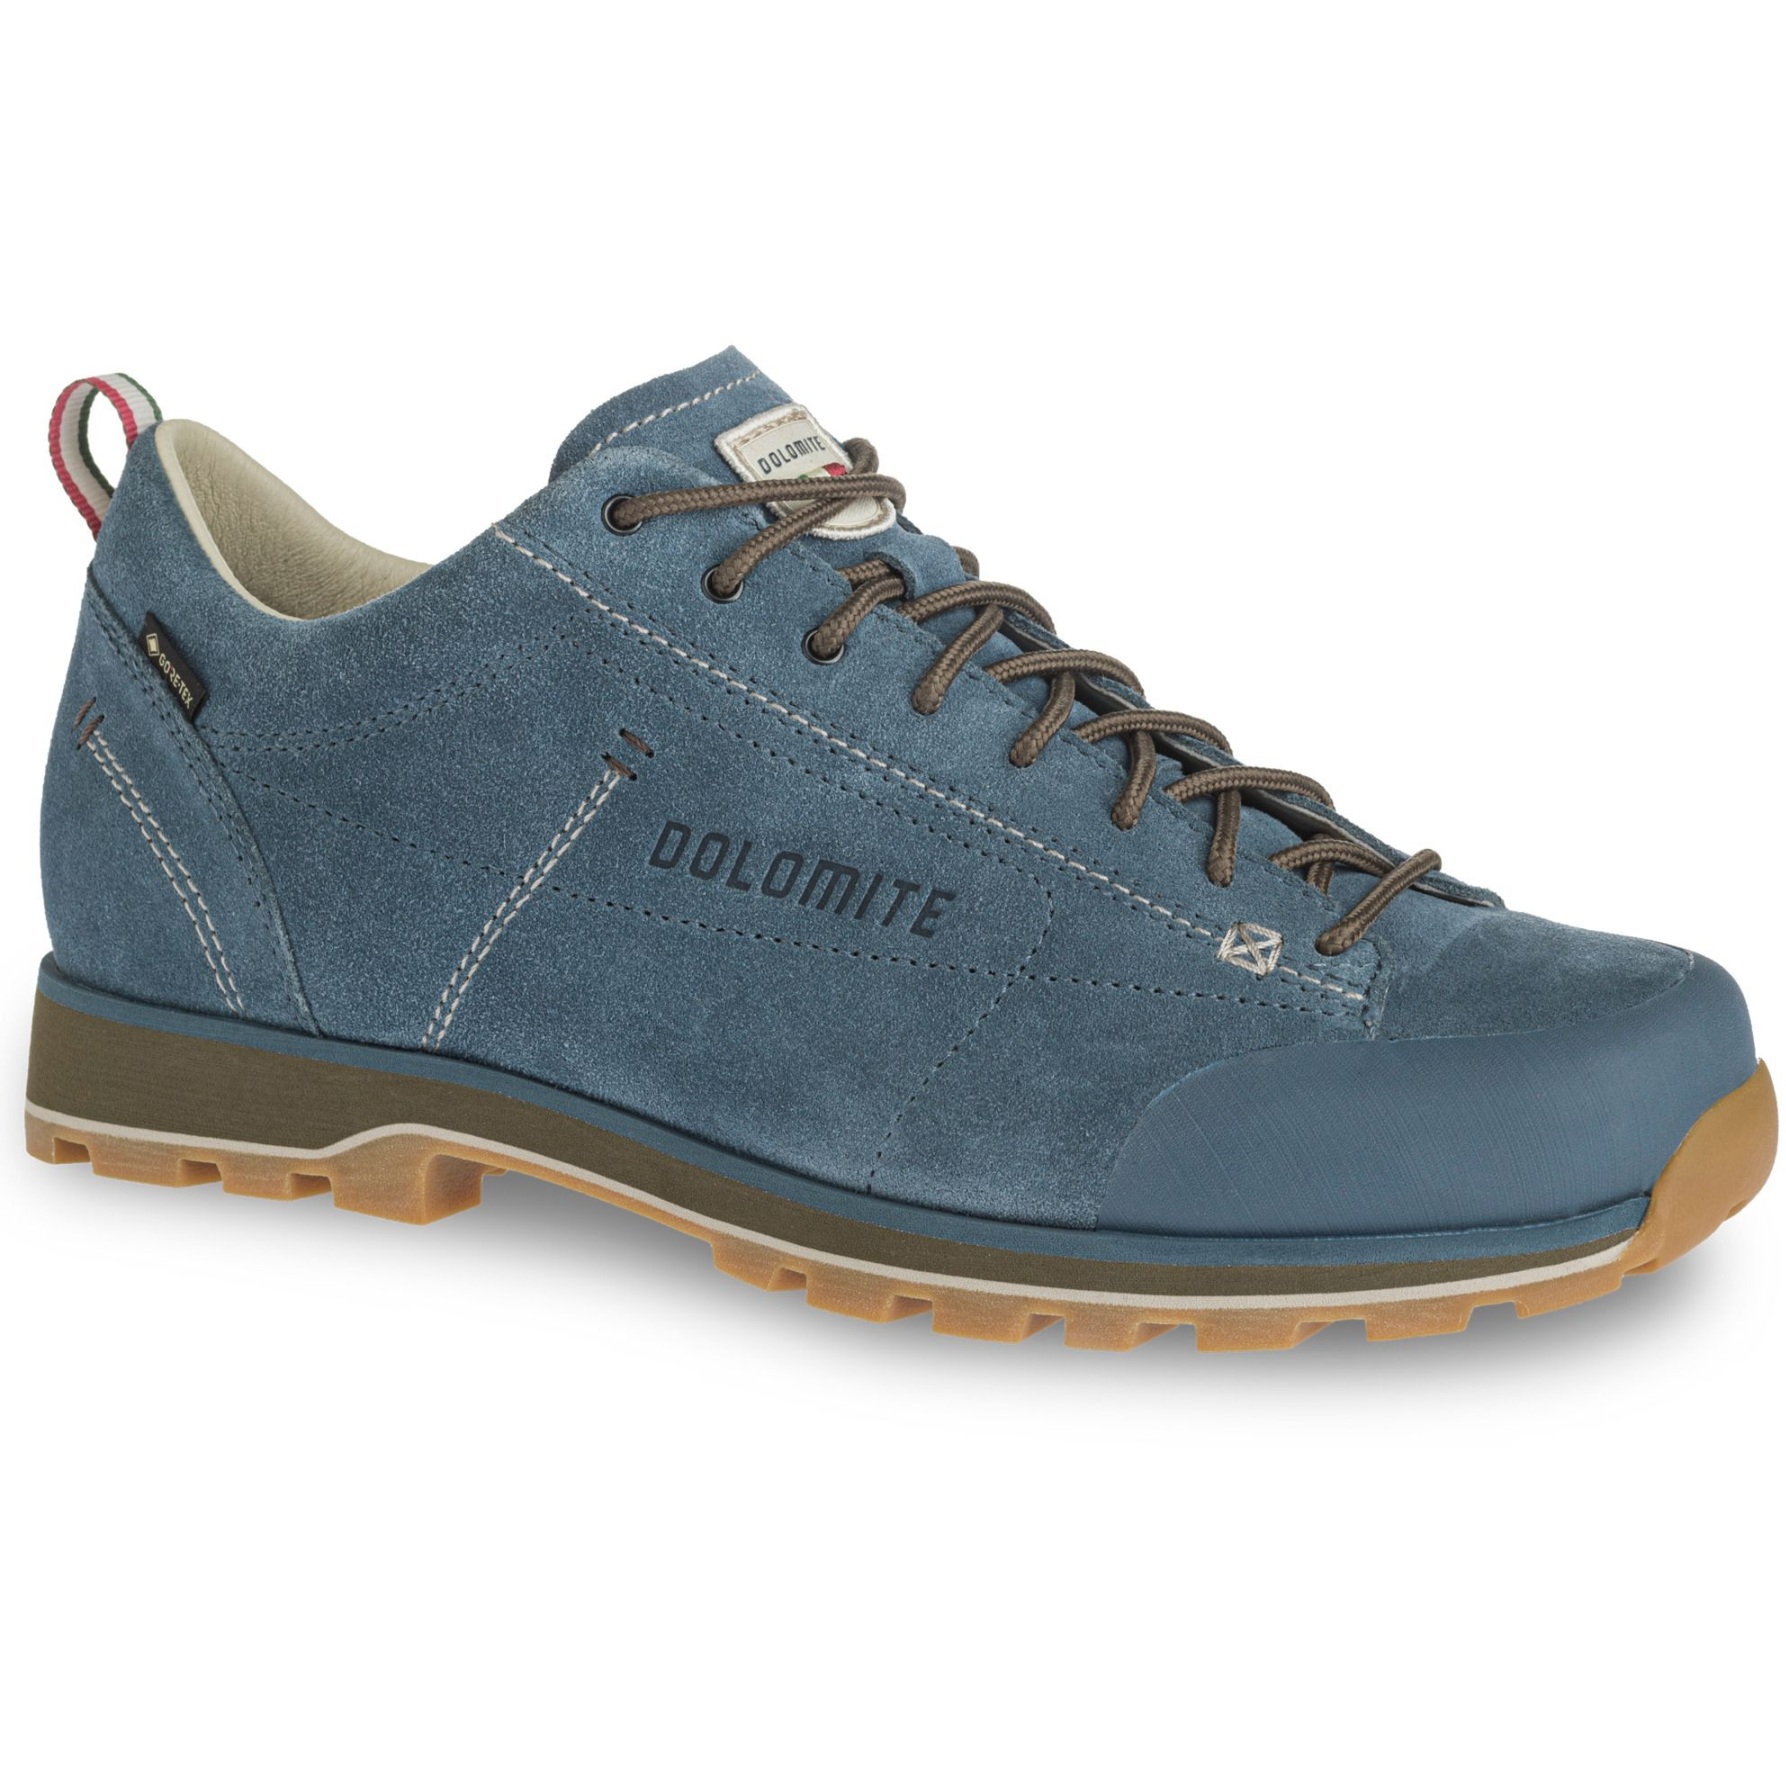 Bild von Dolomite 54 Low GORE-TEX Schuhe Herren - denim blue